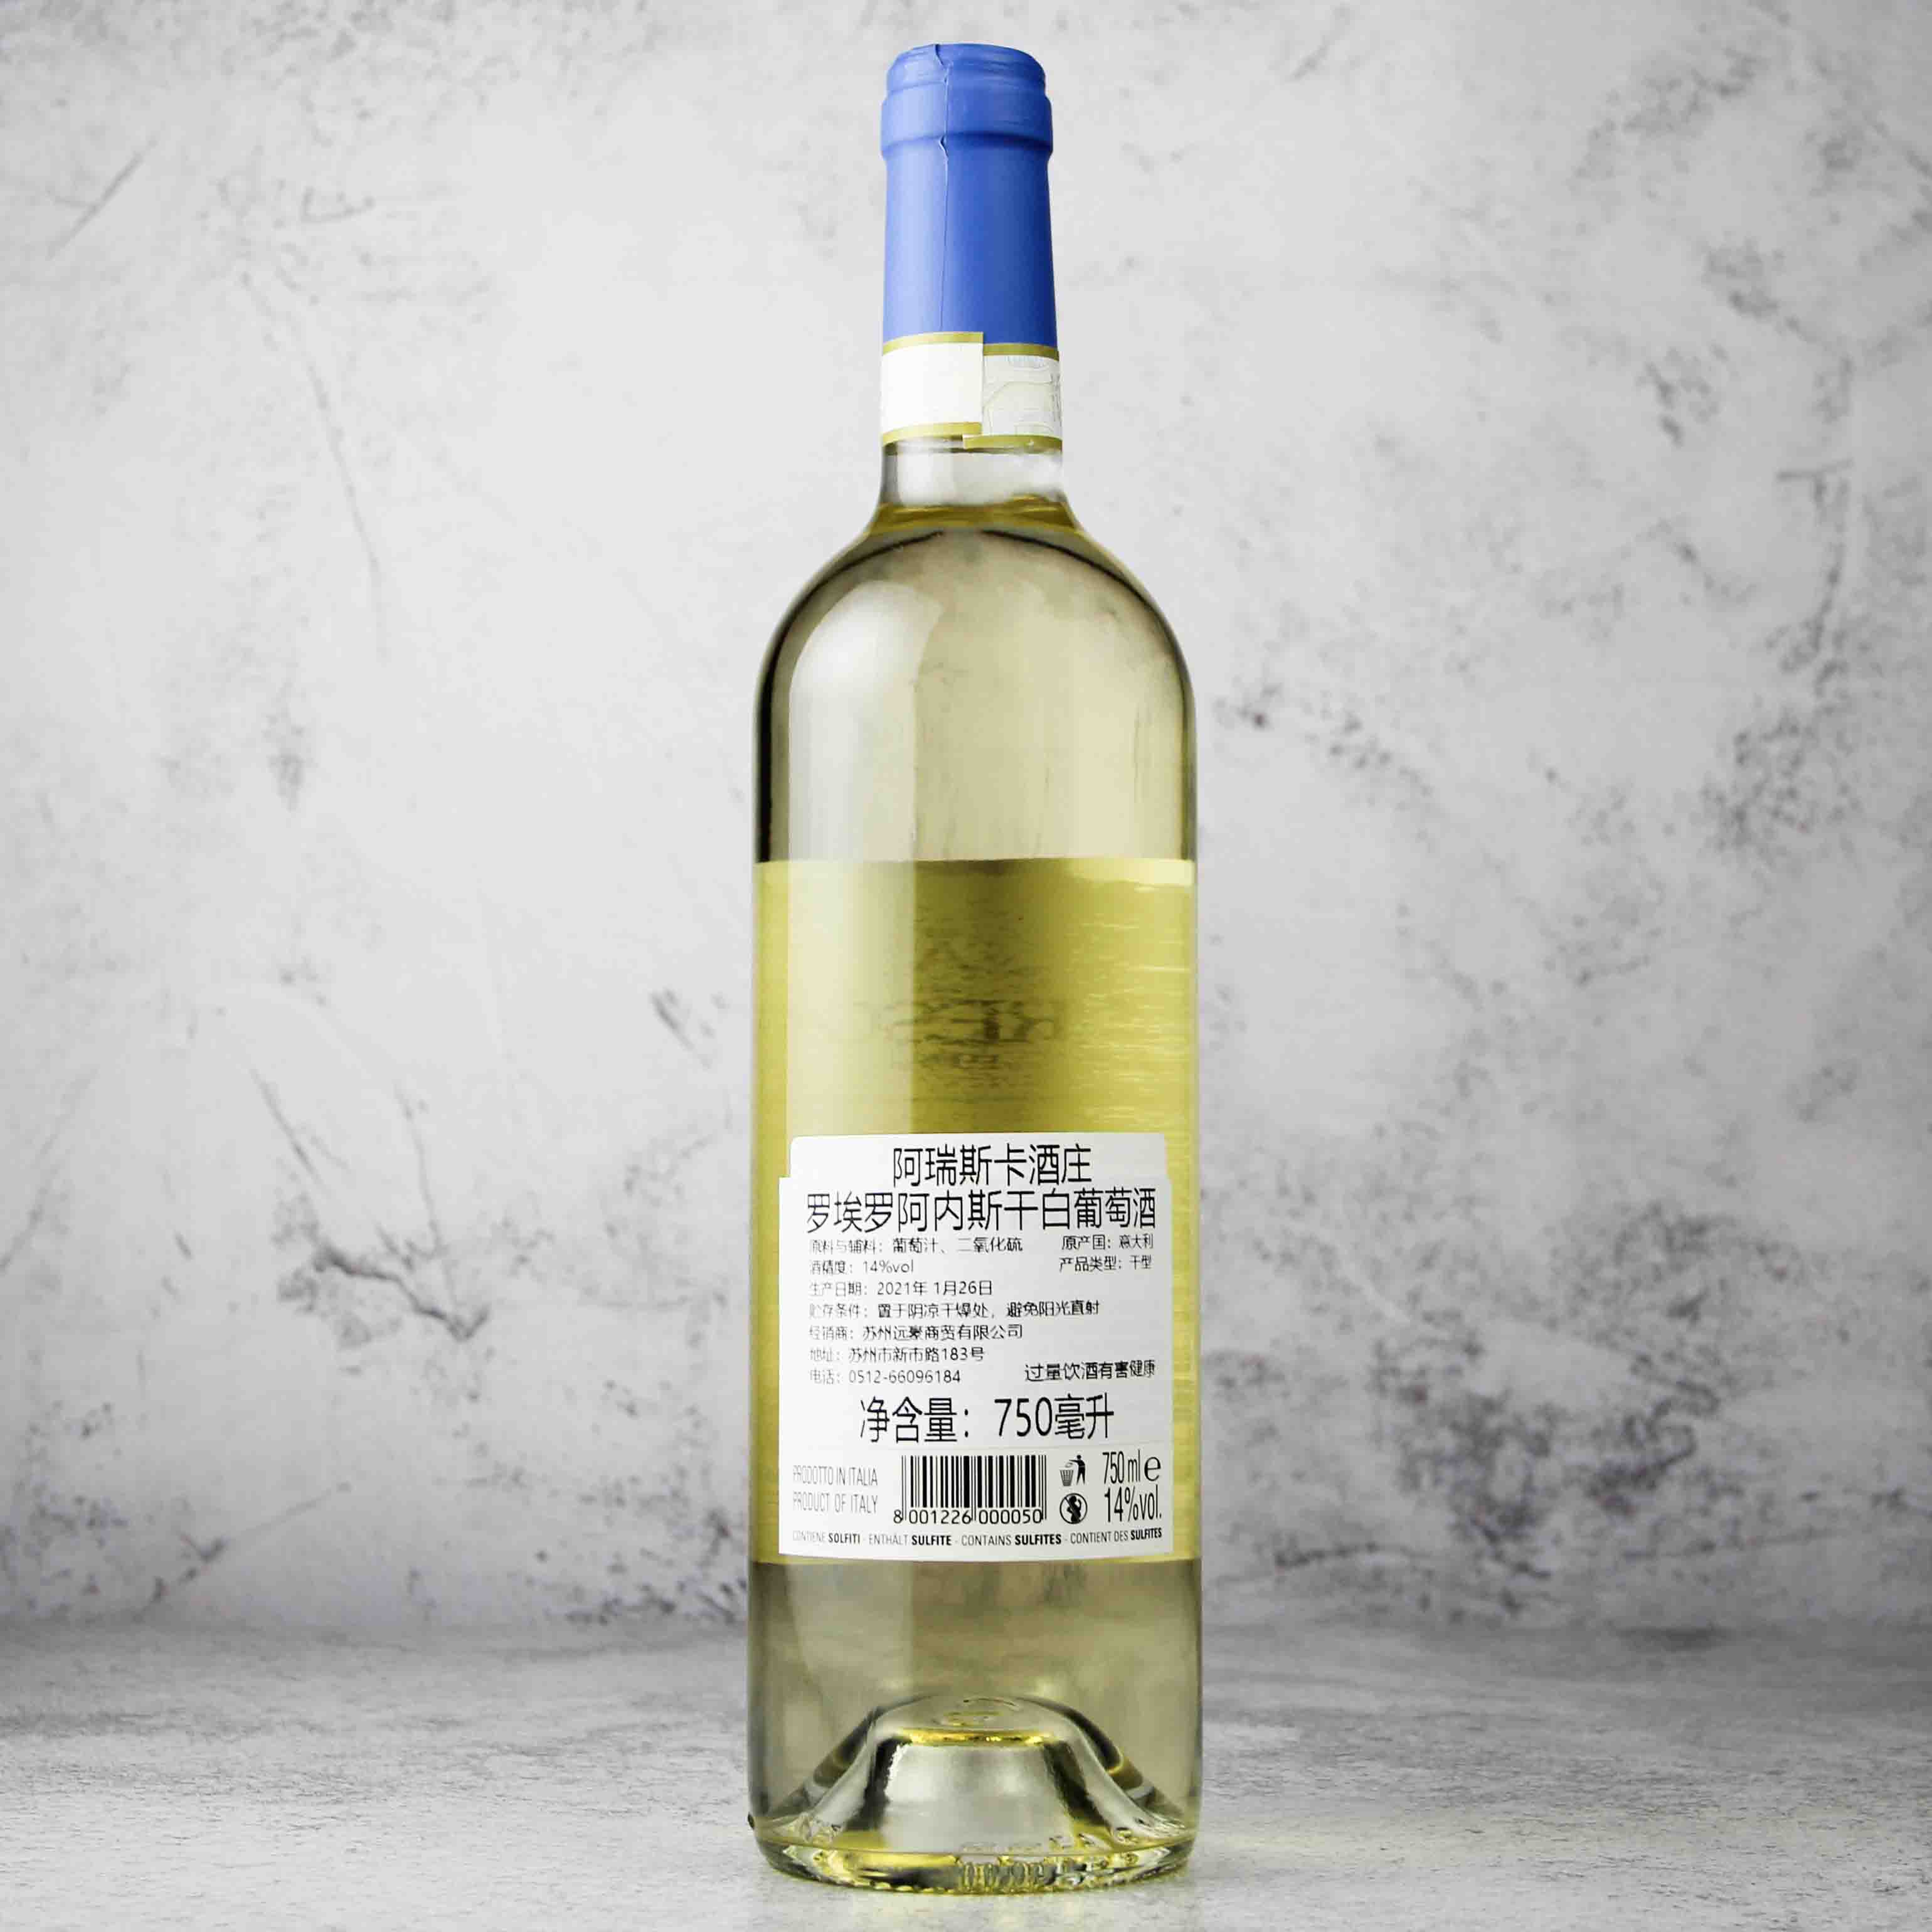 意大利皮埃蒙特ARESCA酒庄罗埃罗·阿内斯白葡萄酒